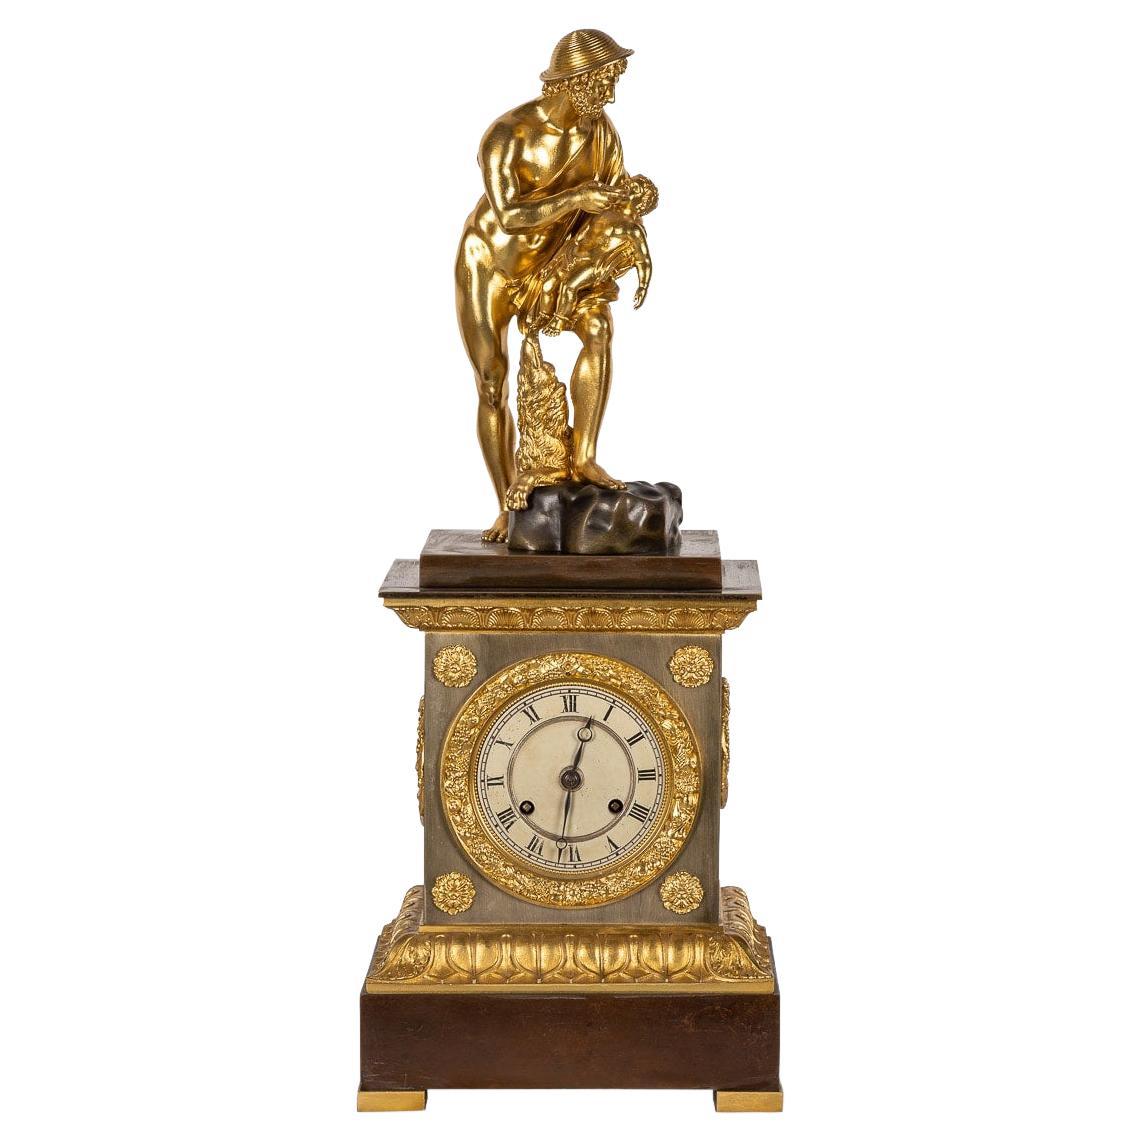 Reloj de chimenea de bronce estilo Imperio francés del siglo XIX, hacia 1870